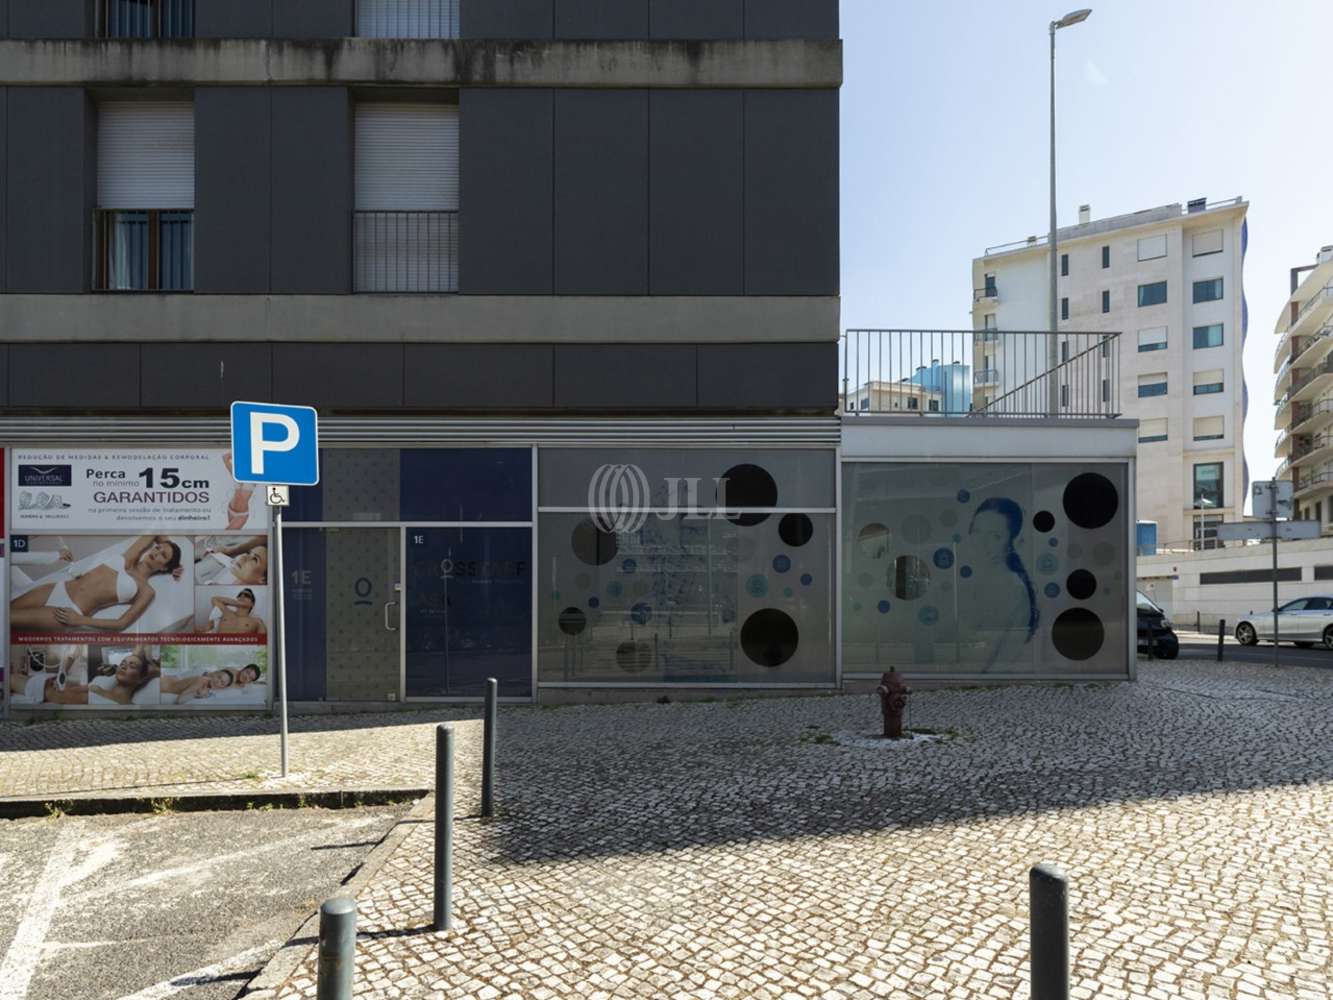 Escritórios Lisboa - Escritório com 3 lugares de estacionamento no Parque das Nações, Lisboa.